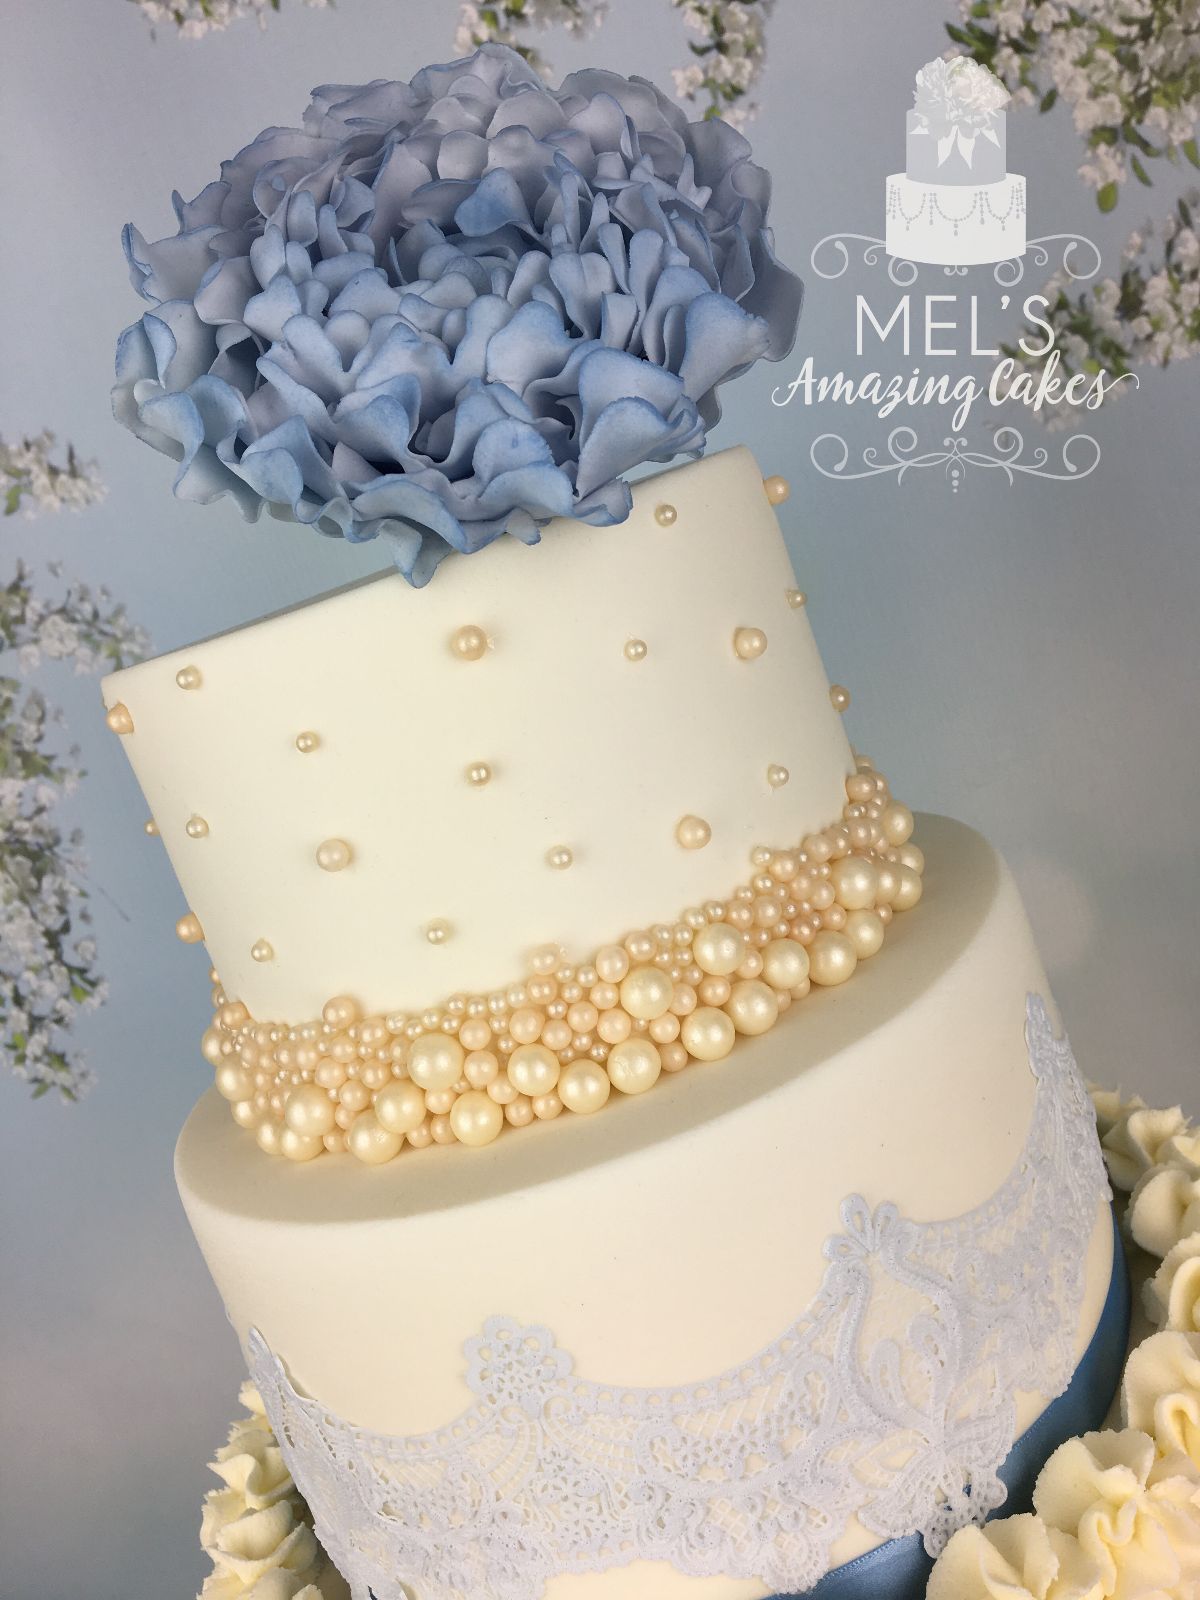 Mel's Amazing Cakes-Image-121